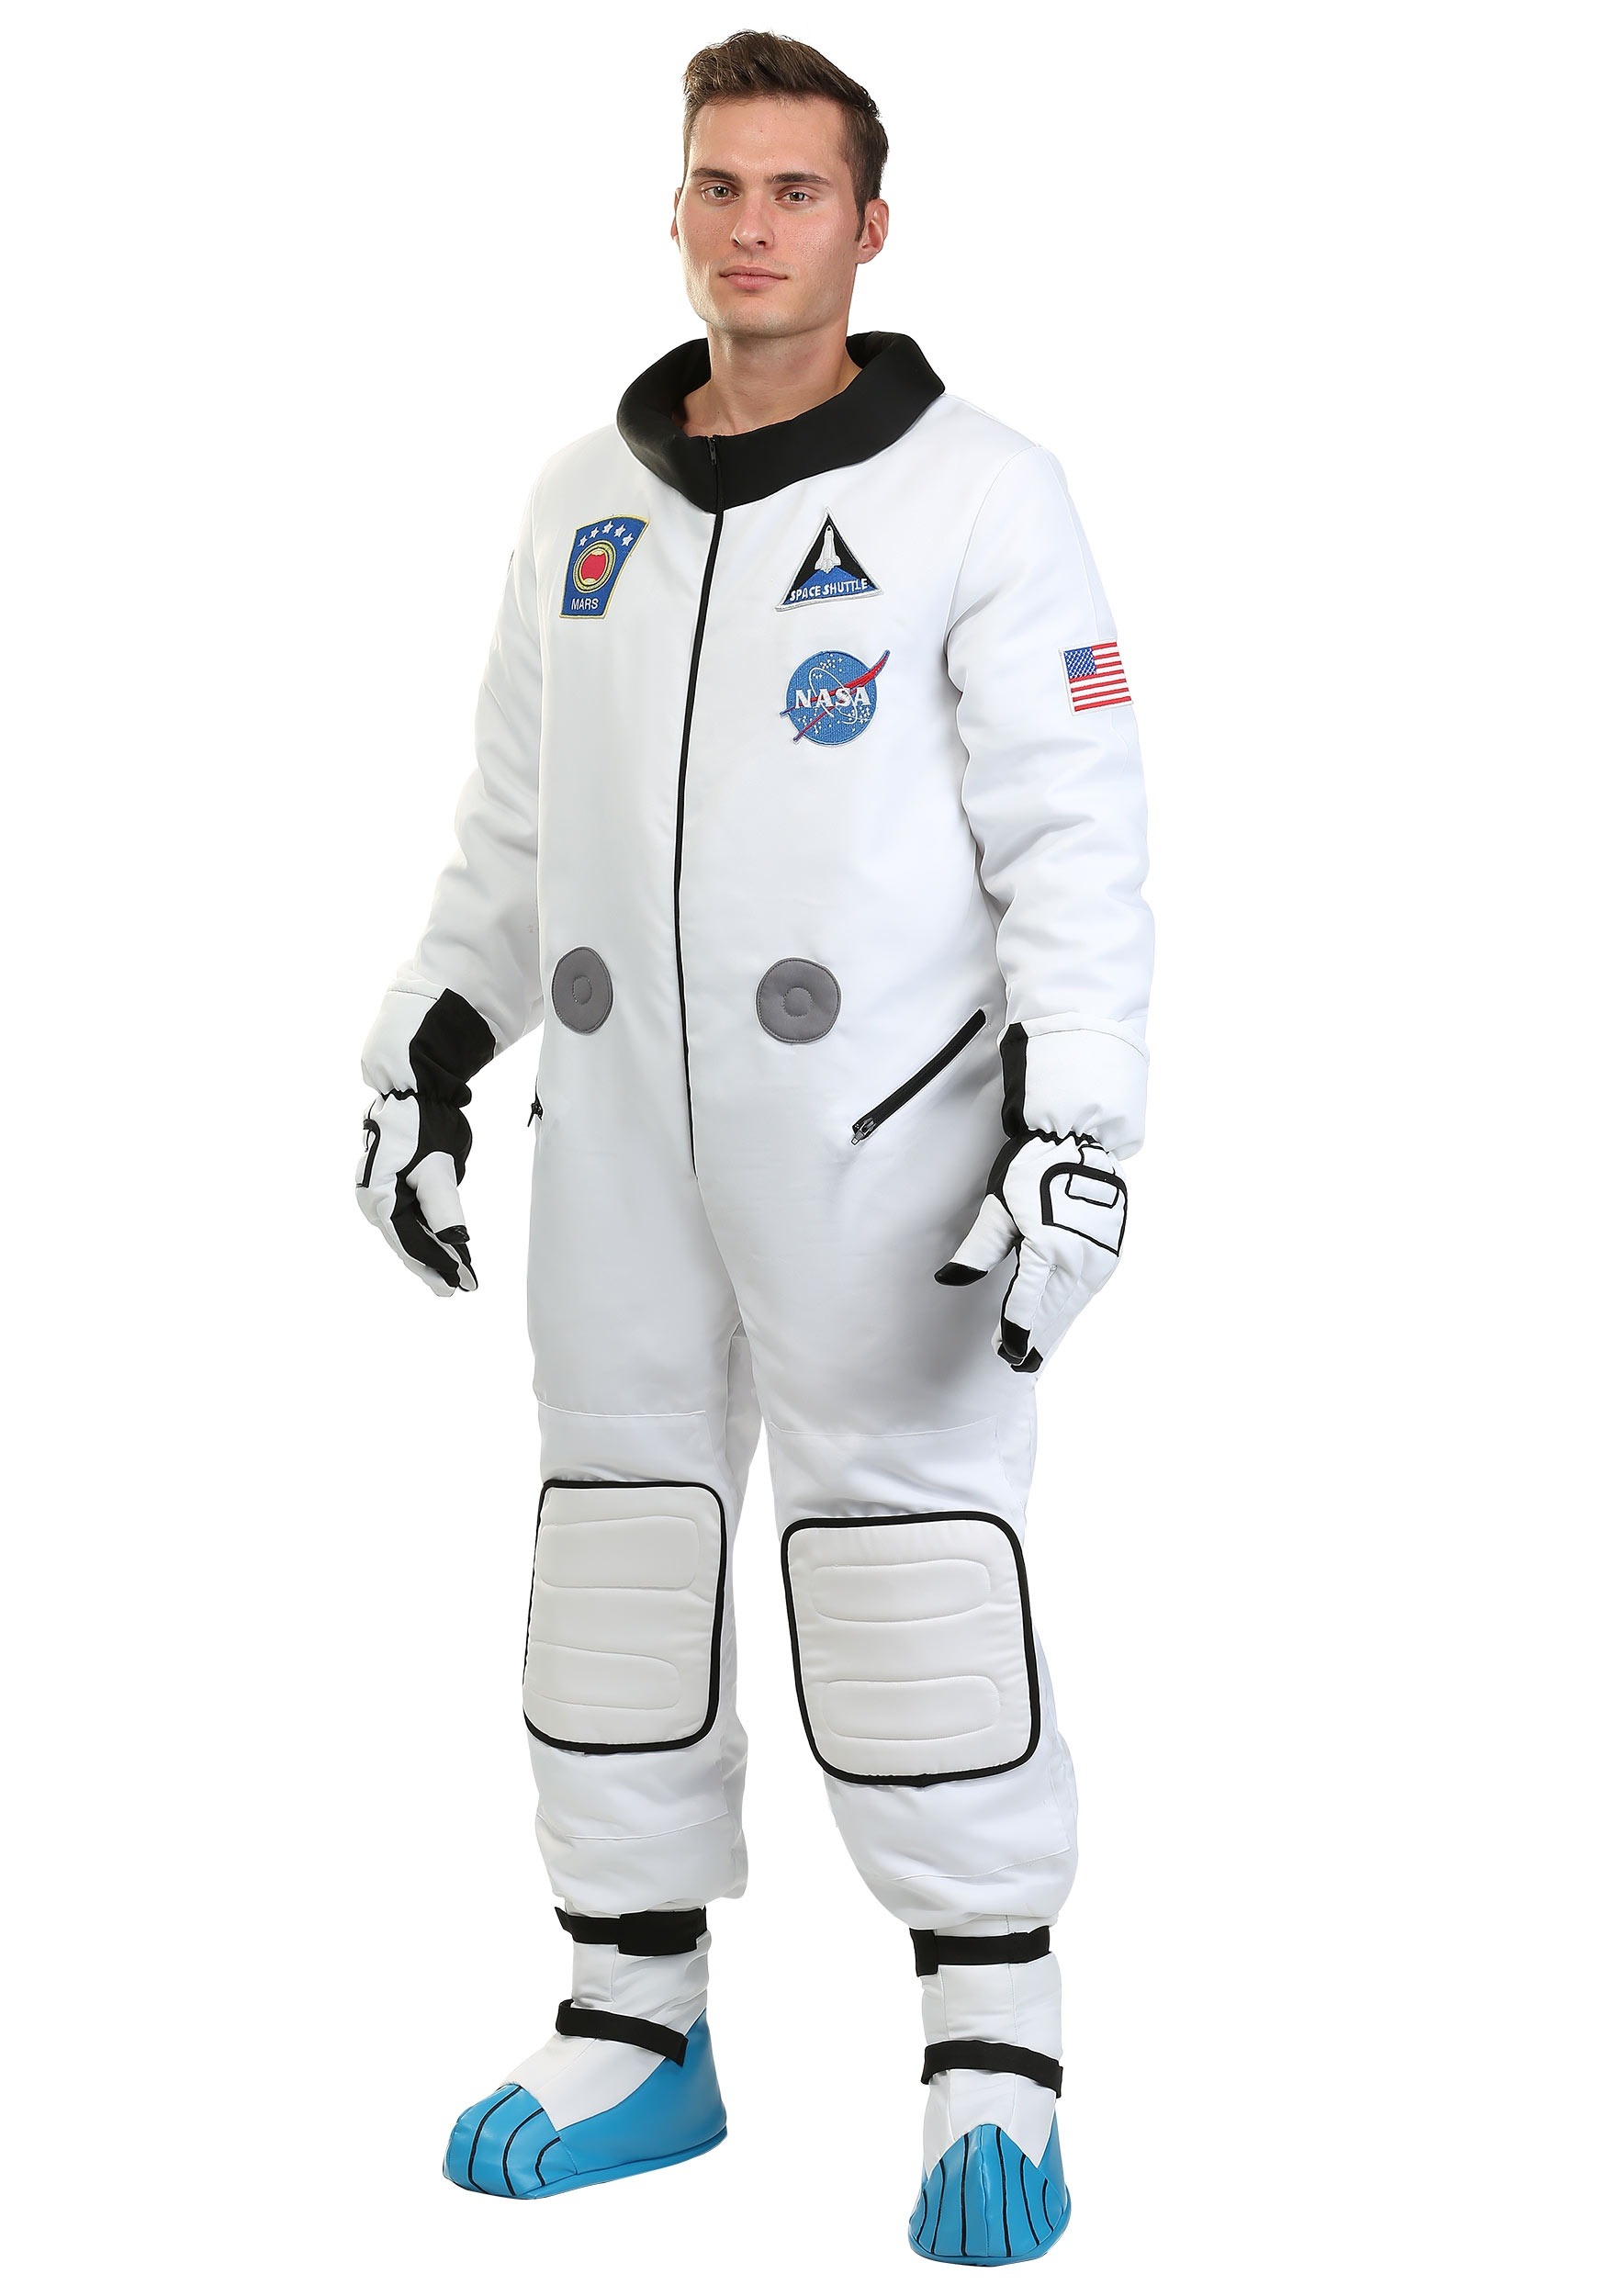 Astronaut Costume Fancy Dress Mens Spaceman White Suit Buzz Space Mission Pilot 